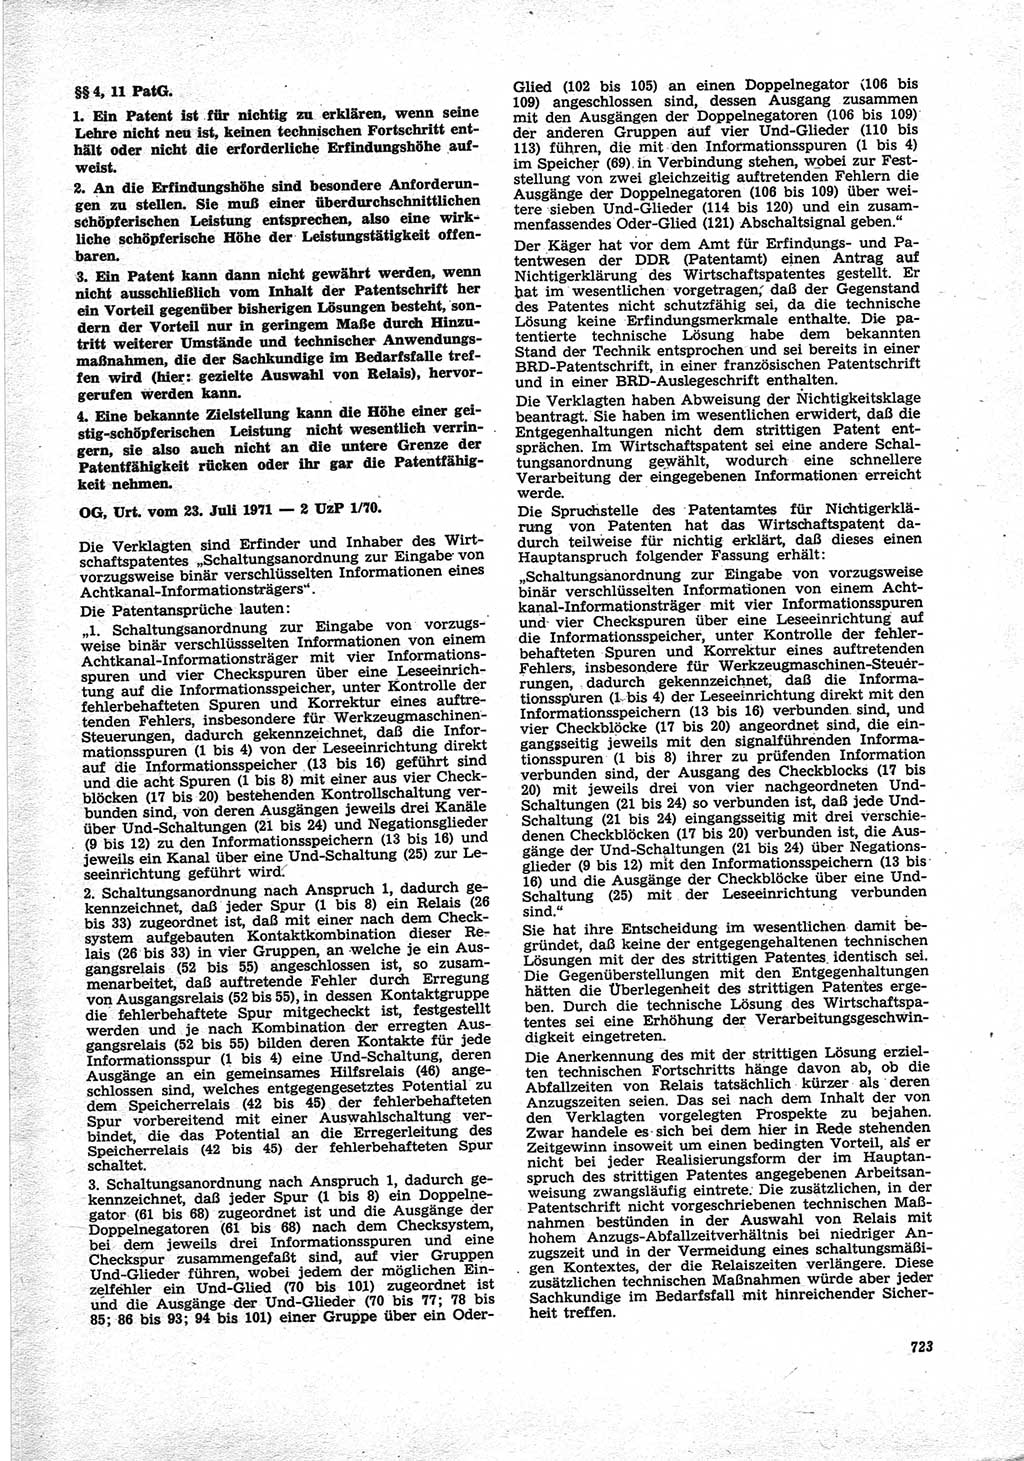 Neue Justiz (NJ), Zeitschrift für Recht und Rechtswissenschaft [Deutsche Demokratische Republik (DDR)], 25. Jahrgang 1971, Seite 723 (NJ DDR 1971, S. 723)